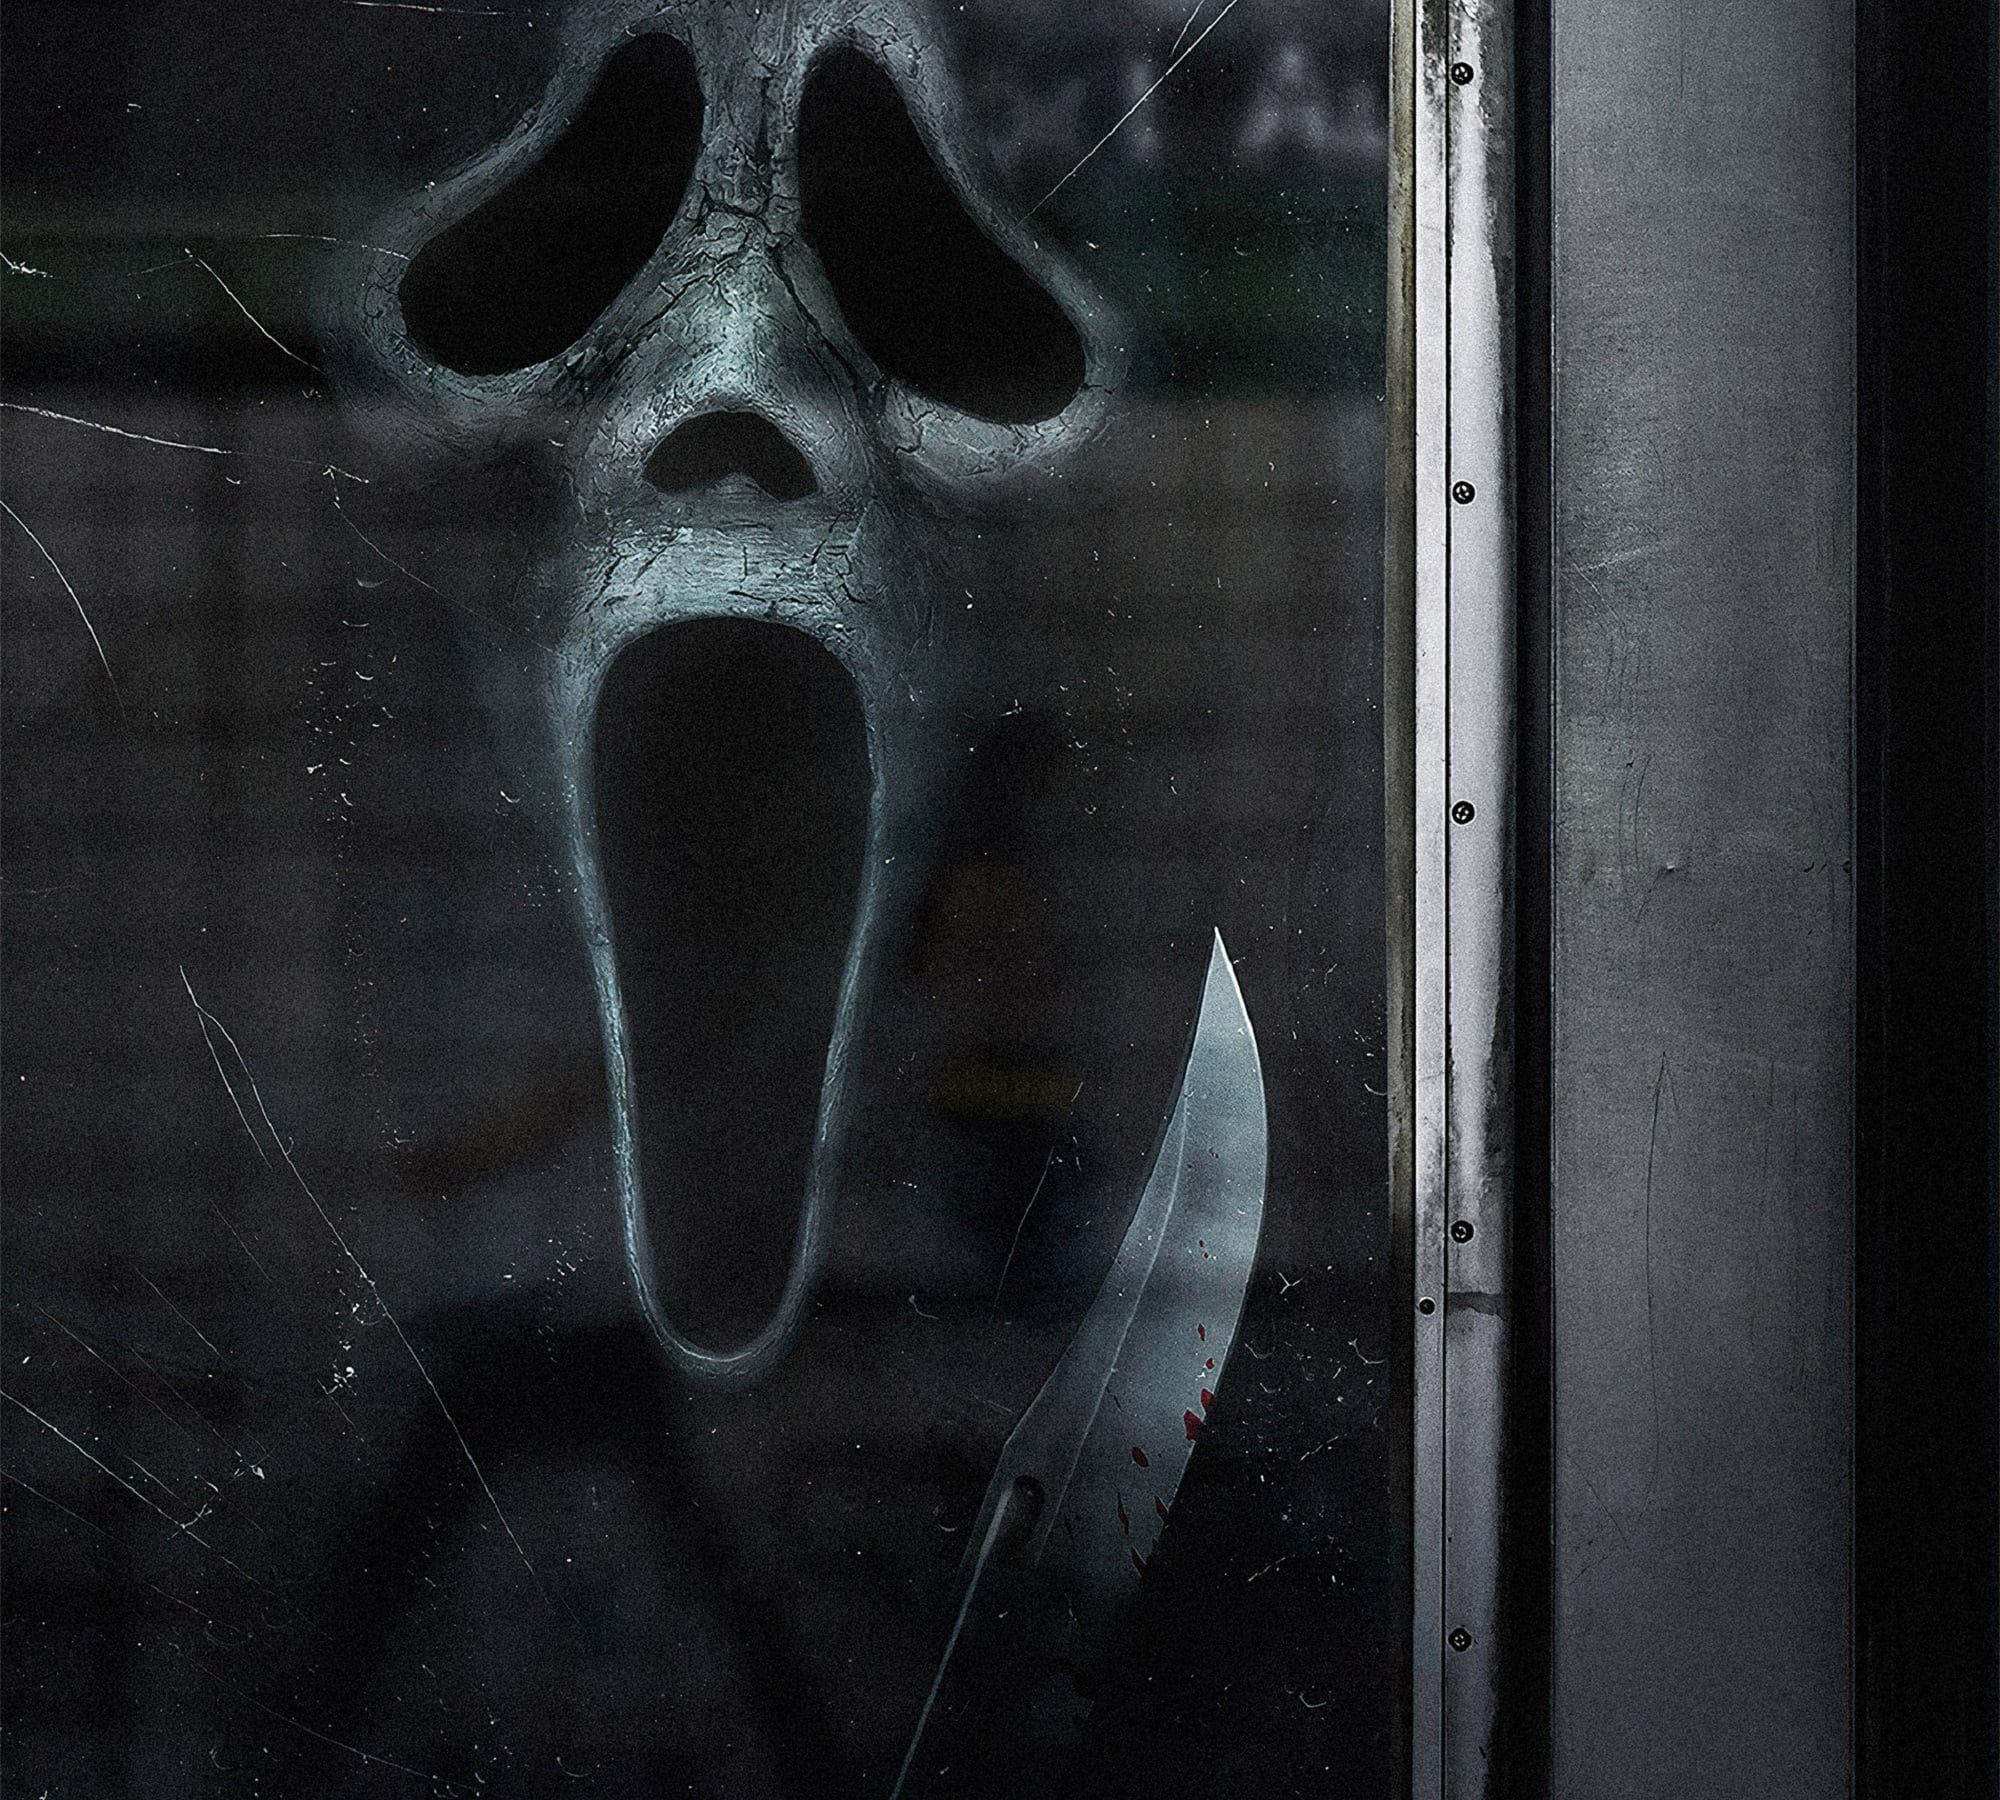 Poster for the movie "Scream VI"